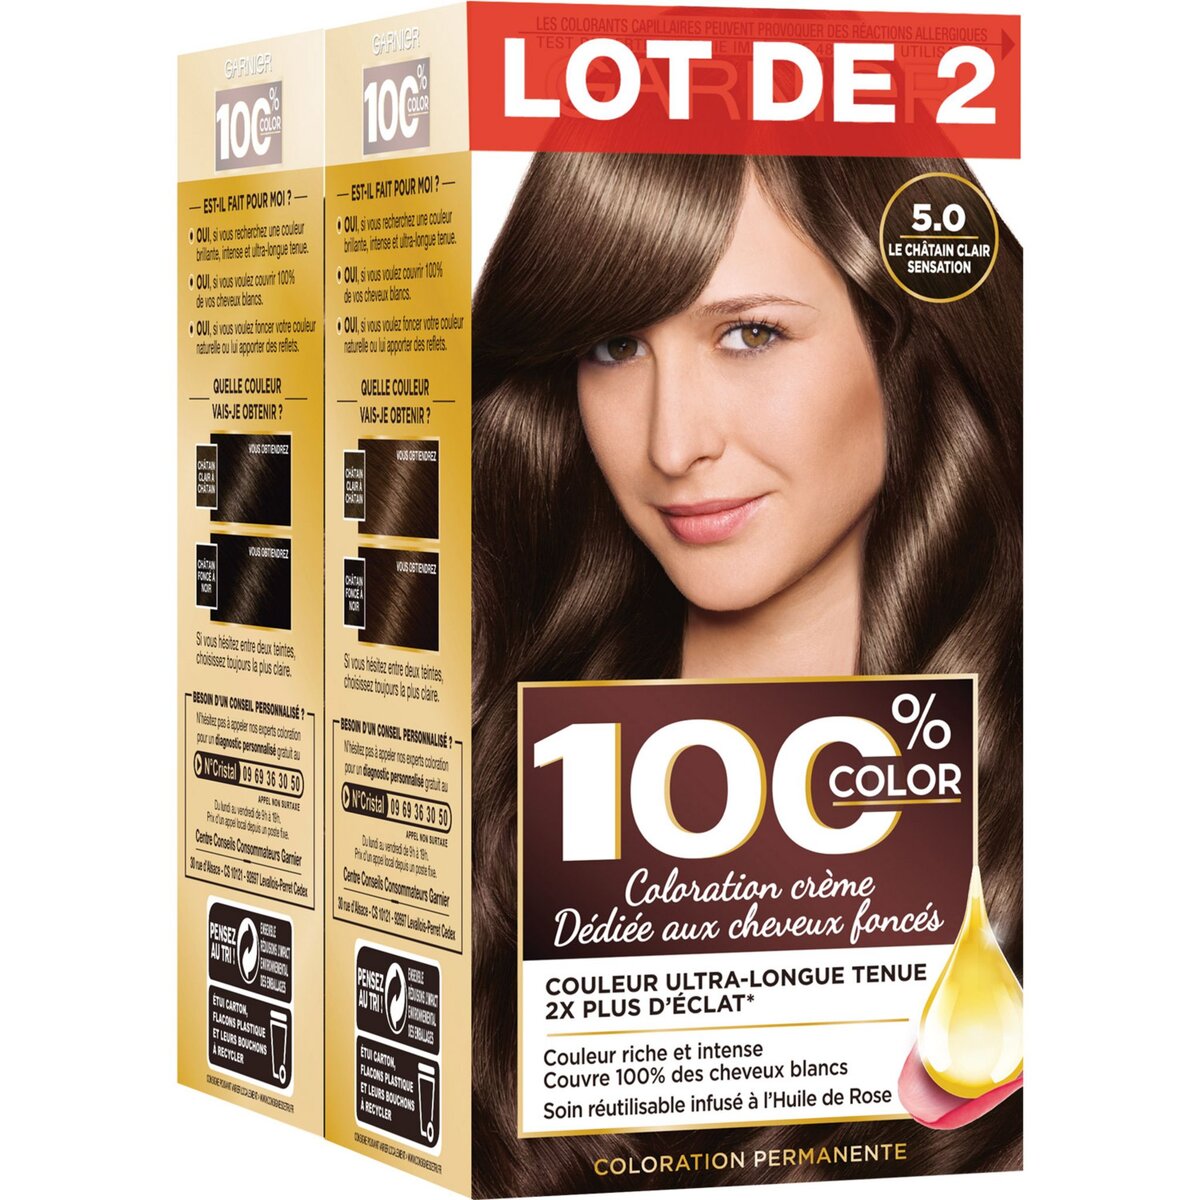 GARNIER 100% ultra brun coloration permanente 5.0 le châtain clair sensation 4 produits 1 kit